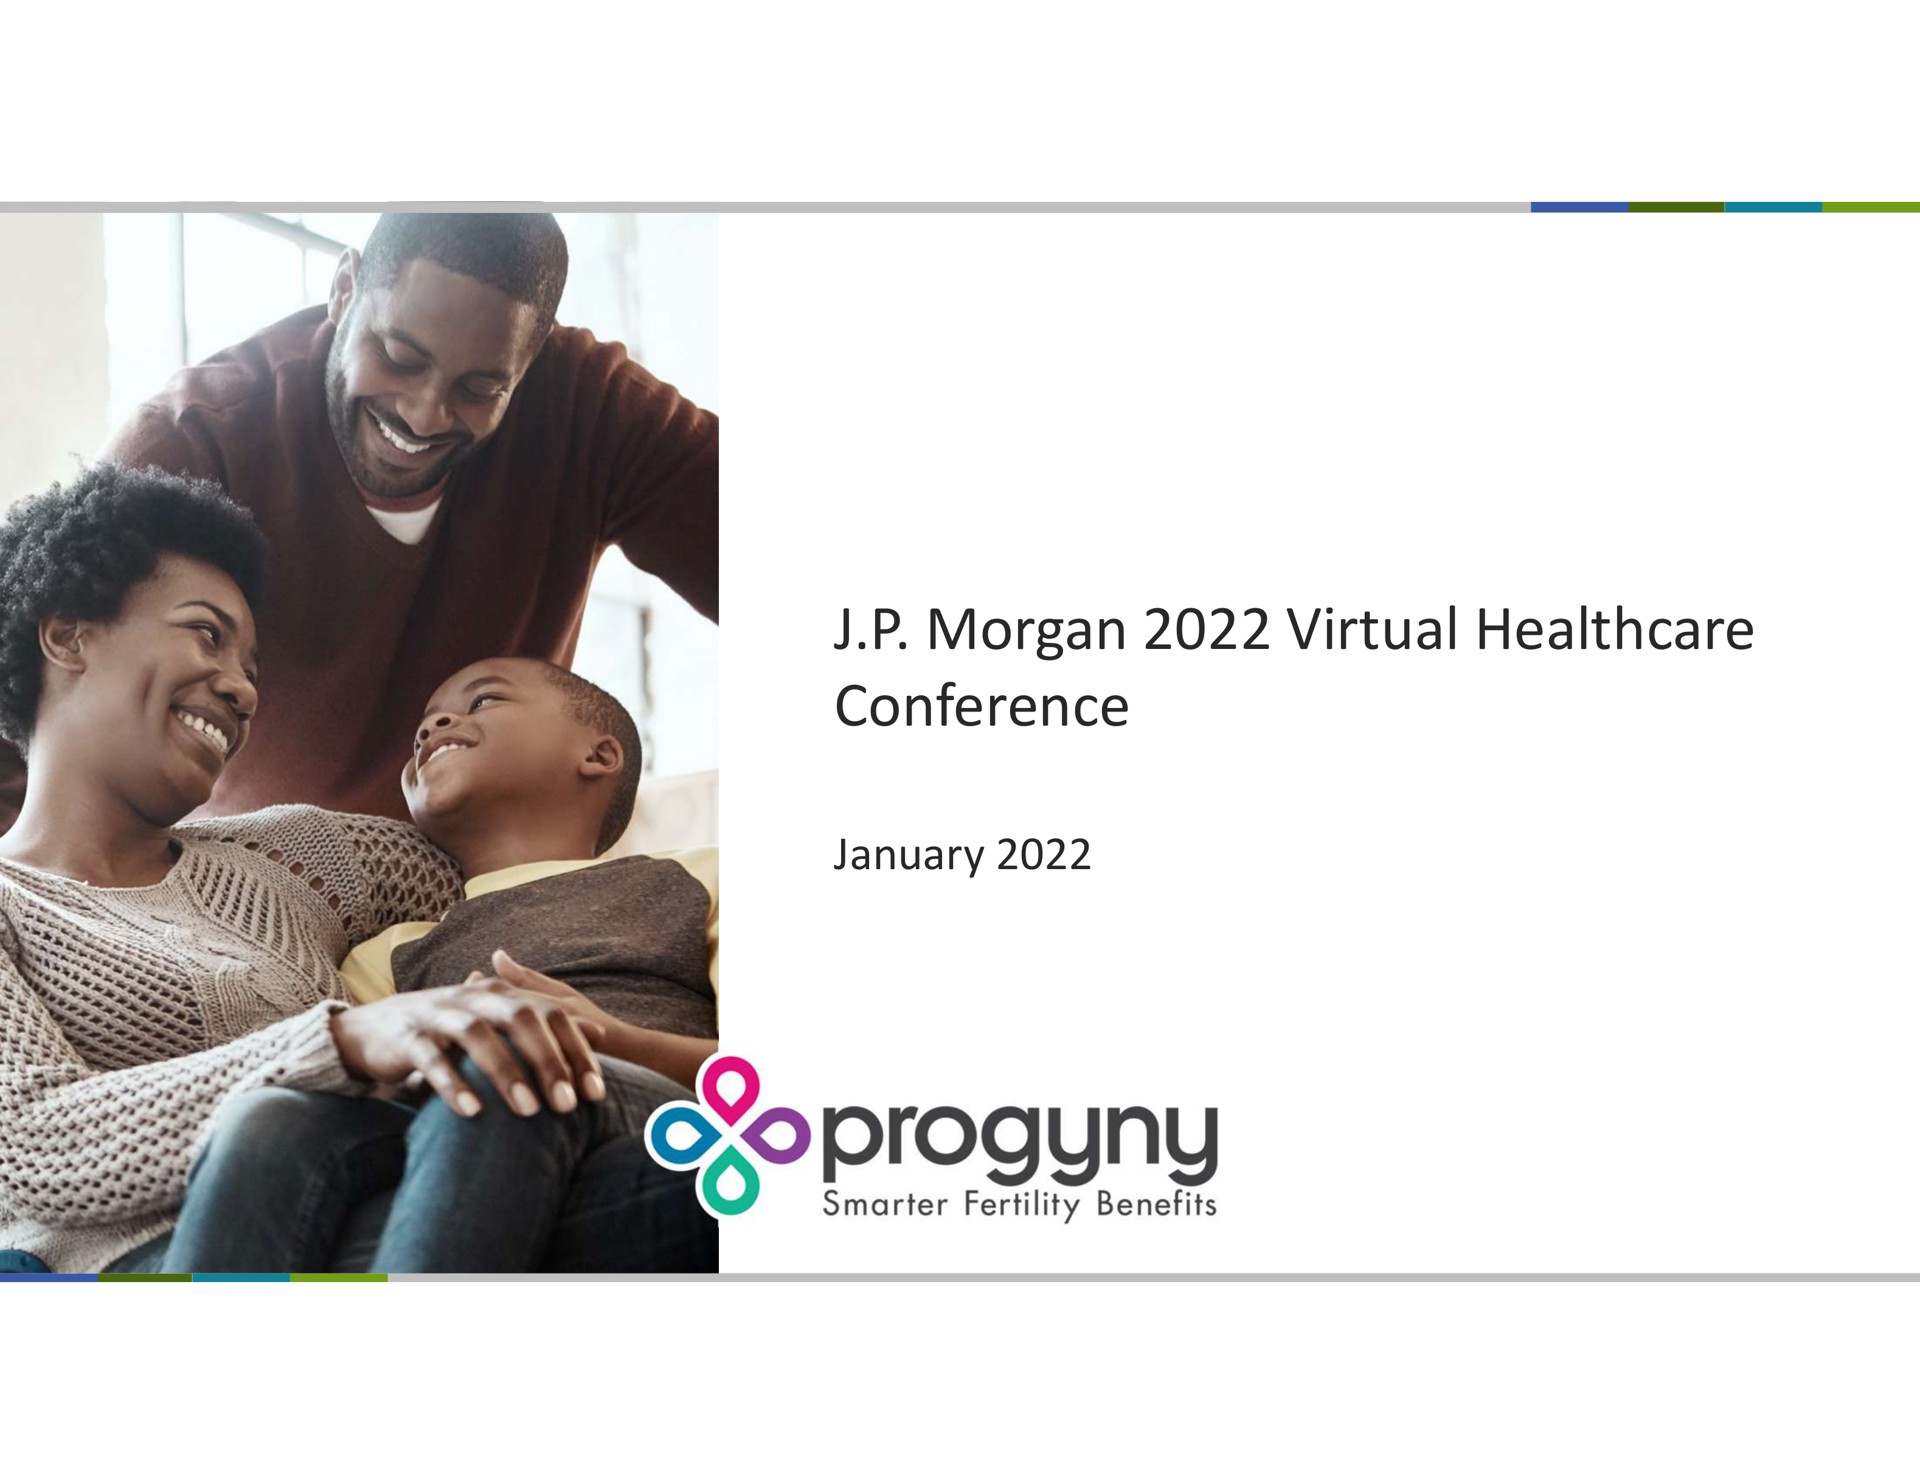 morgan virtual conference | Progyny